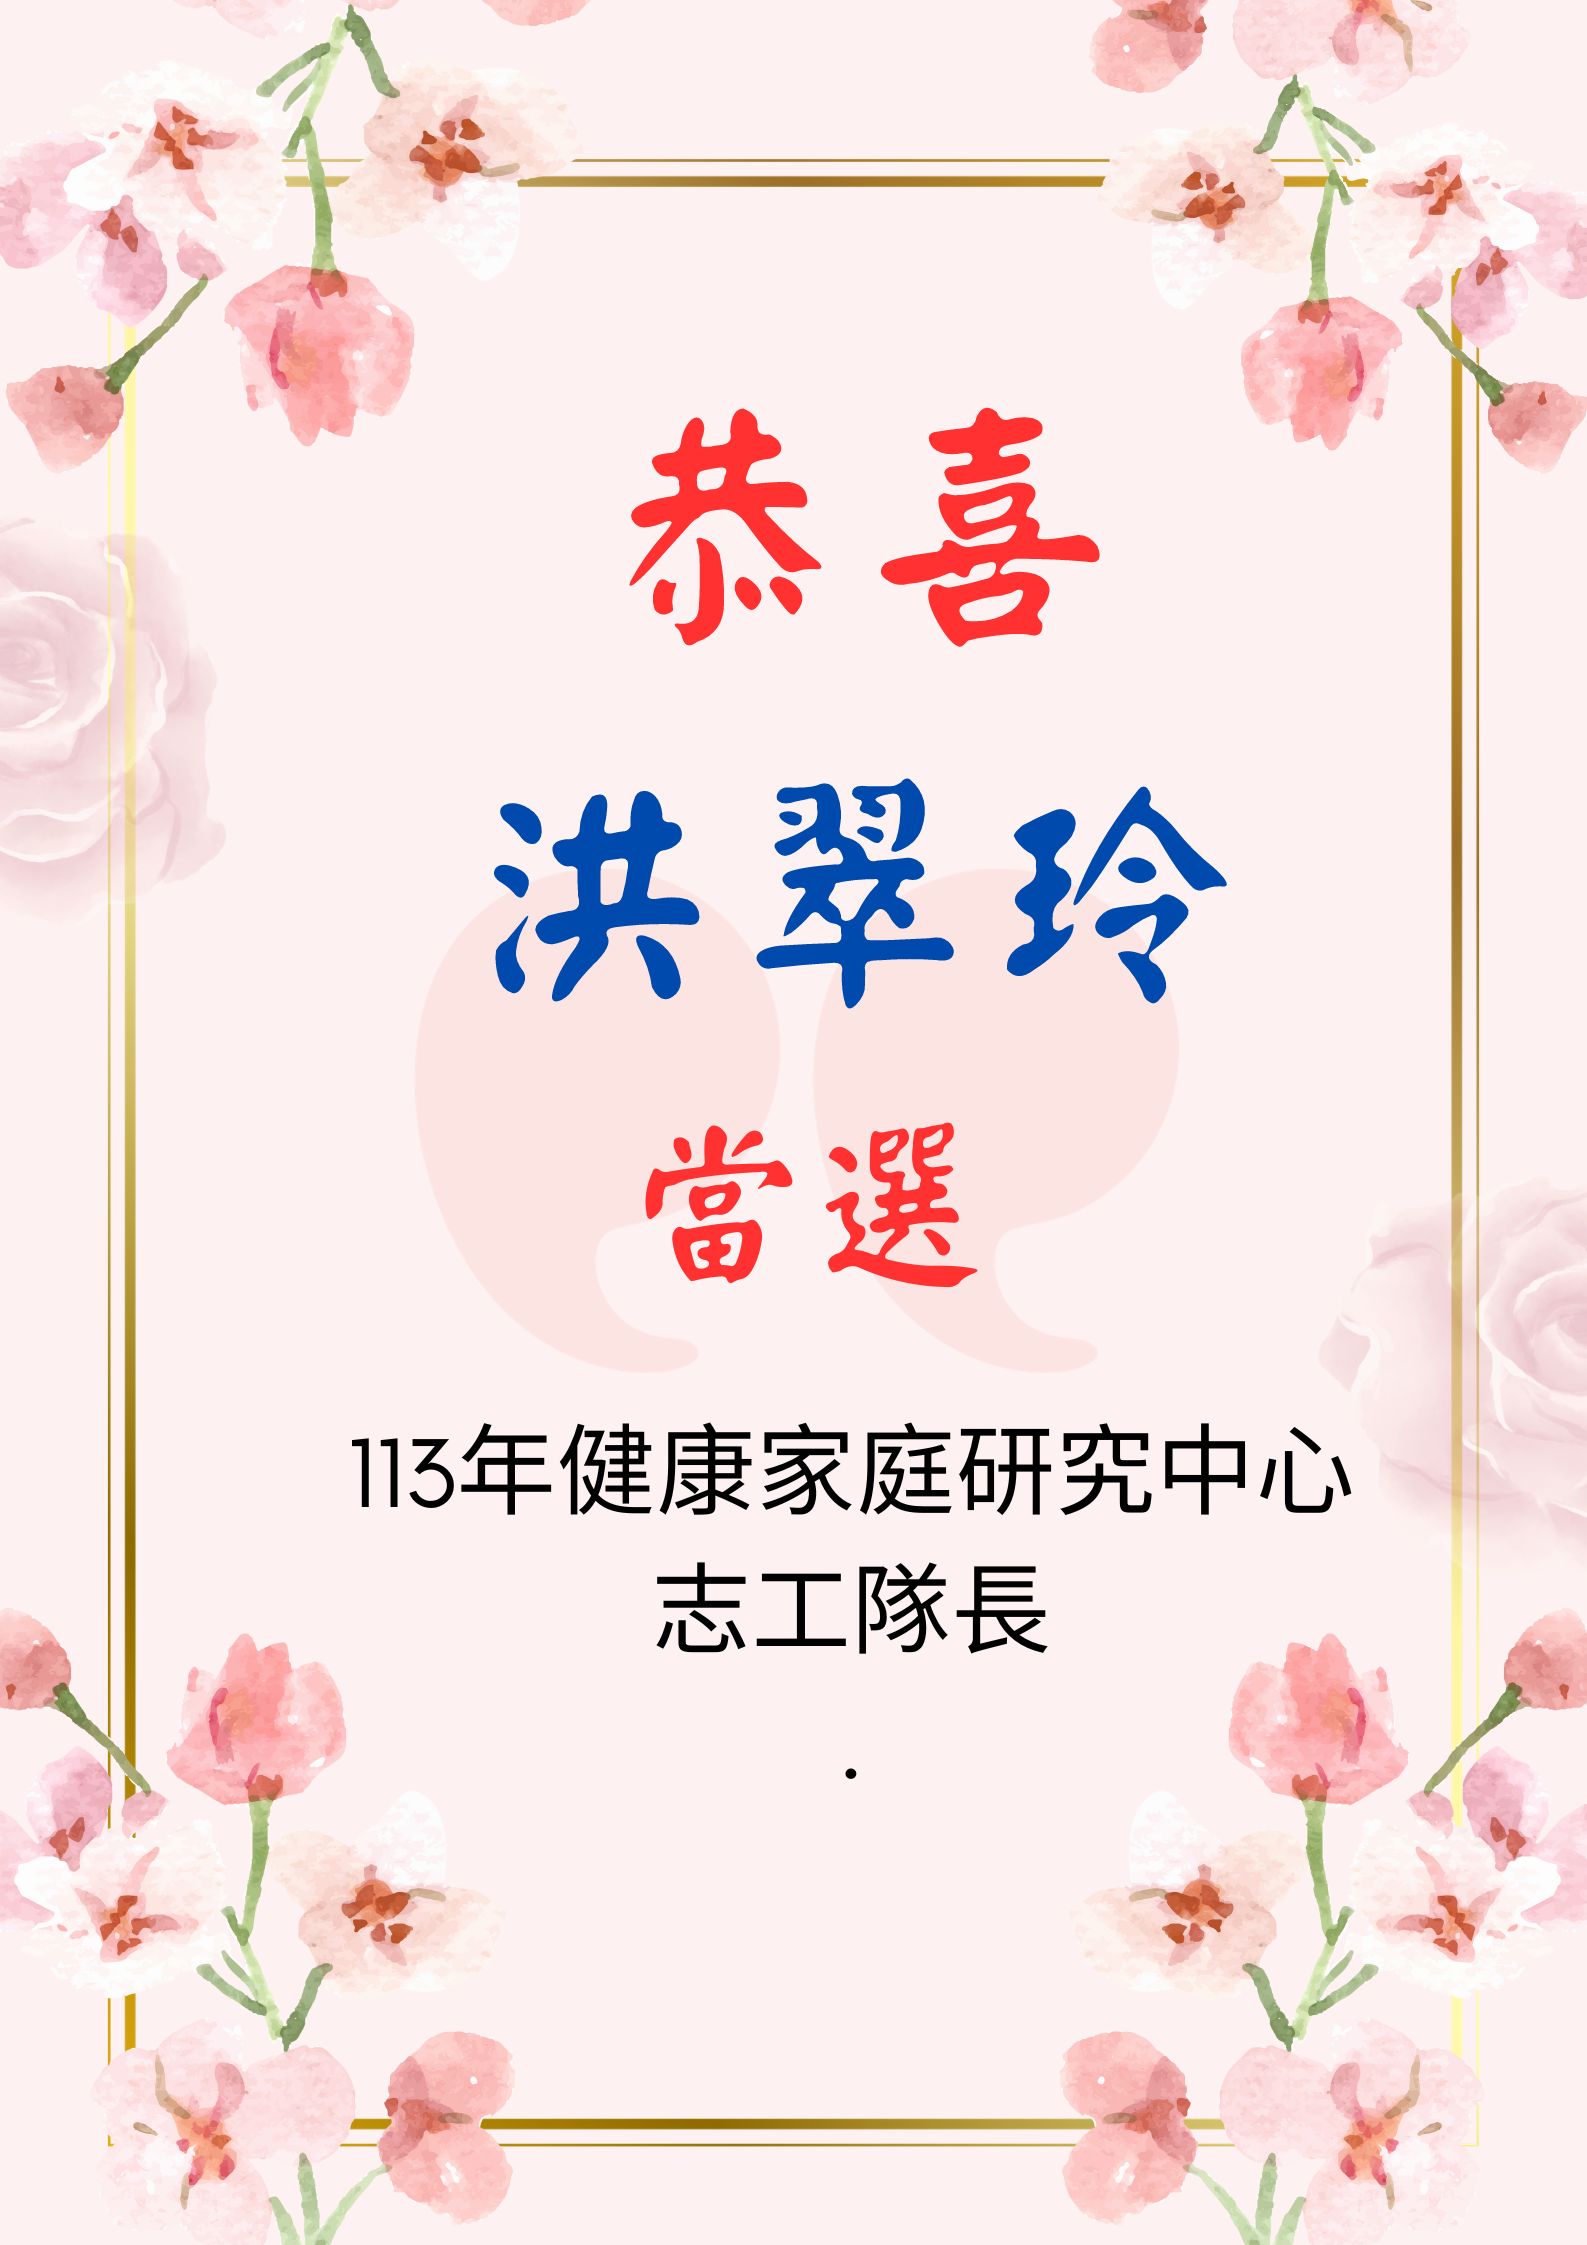 恭喜 洪翠玲 當選 113年健康家庭研究中心志工隊長